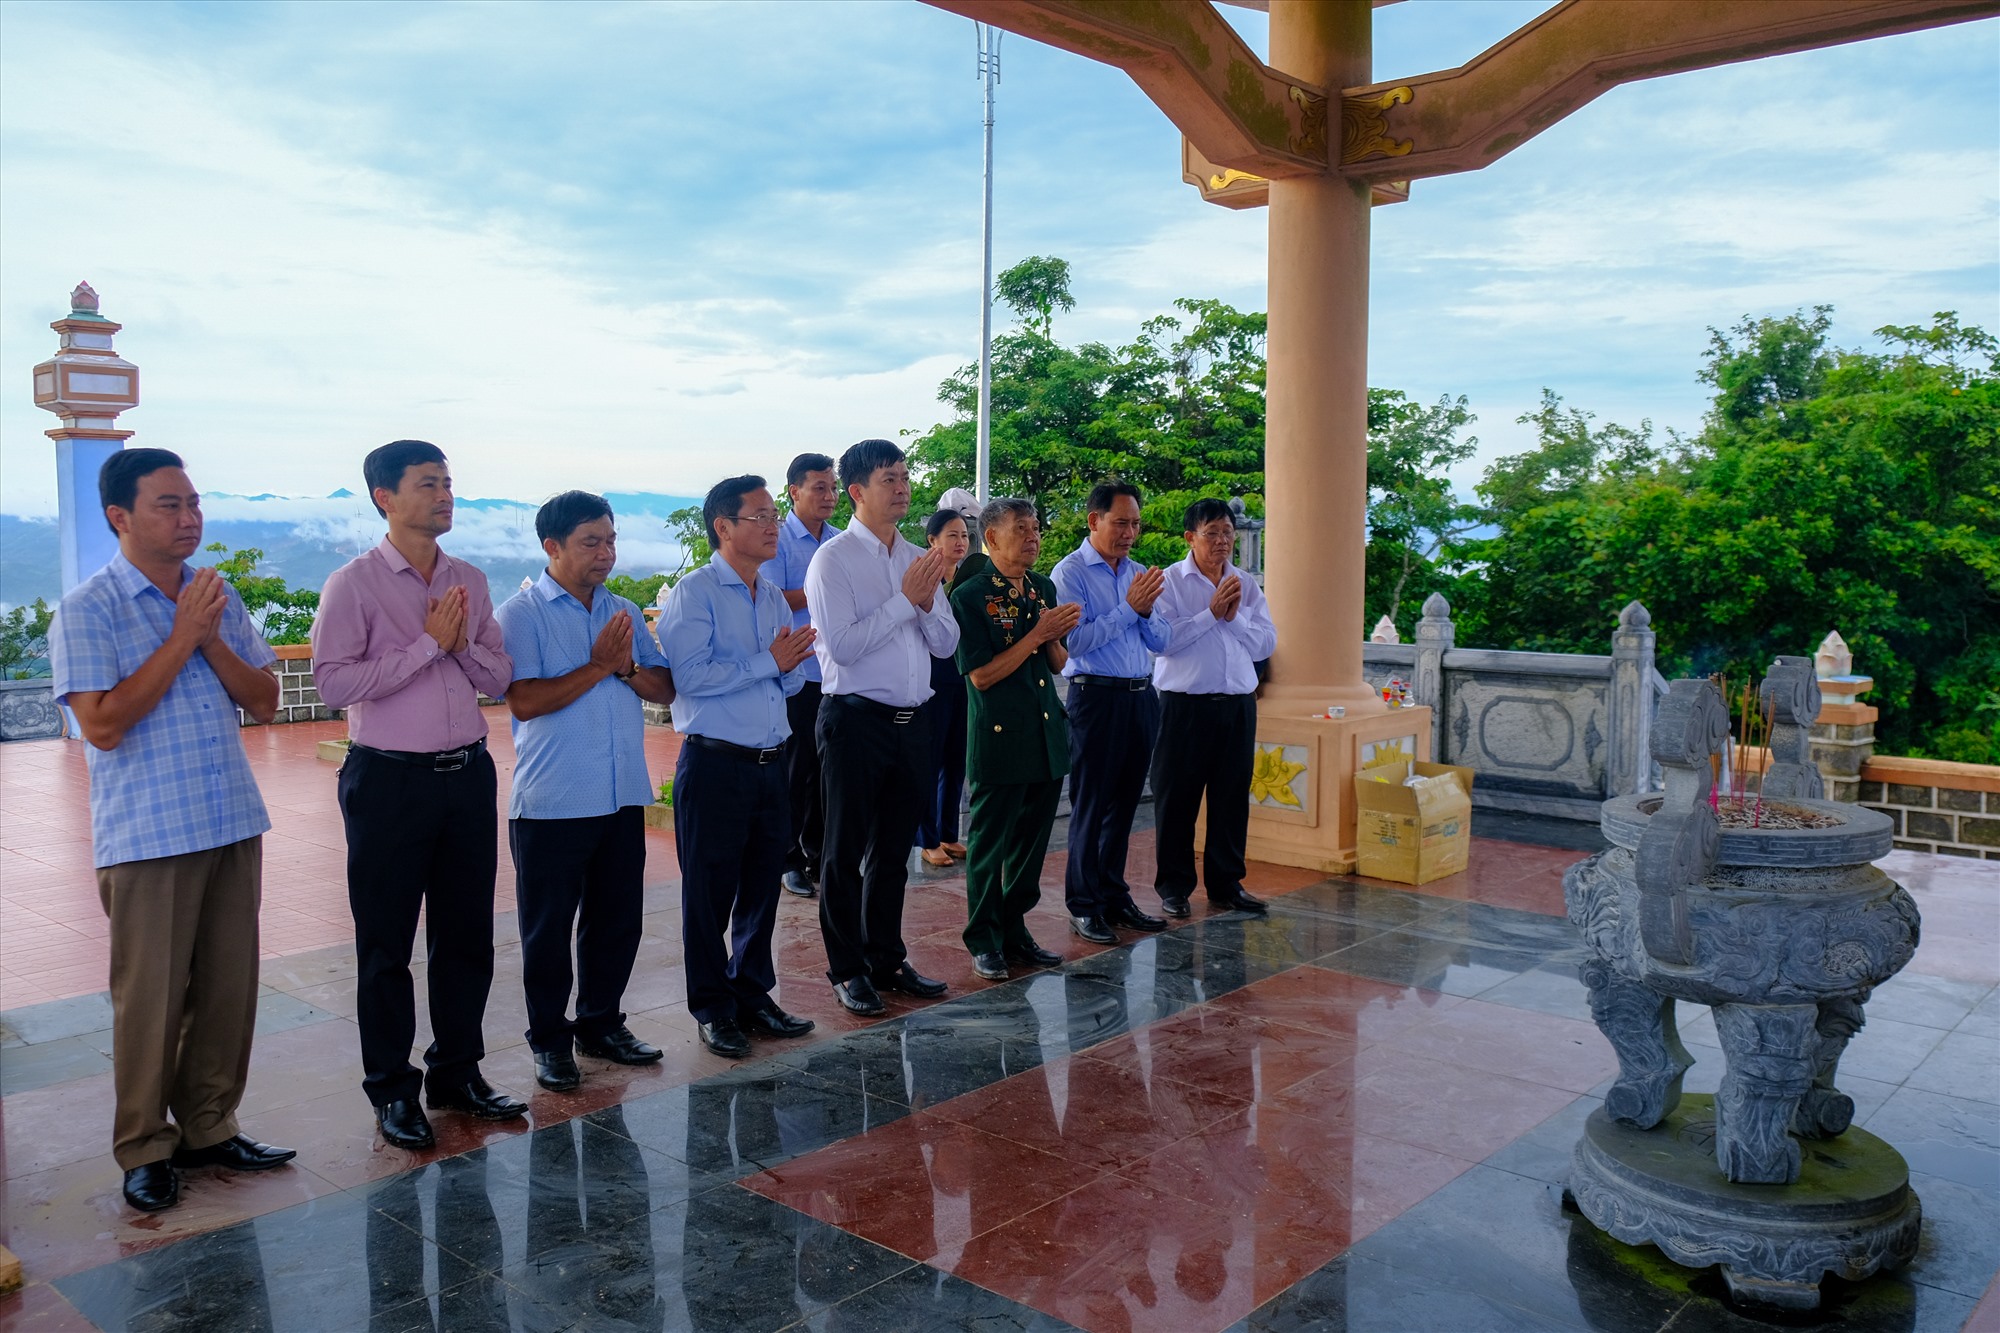 Bí thư Tỉnh ủy Lê Quang Tùng cùng các thành viên trong đoàn dâng hương, tri ân các anh hùng liệt sĩ tại Cao điểm 689 - Ảnh: Trần Tuyền